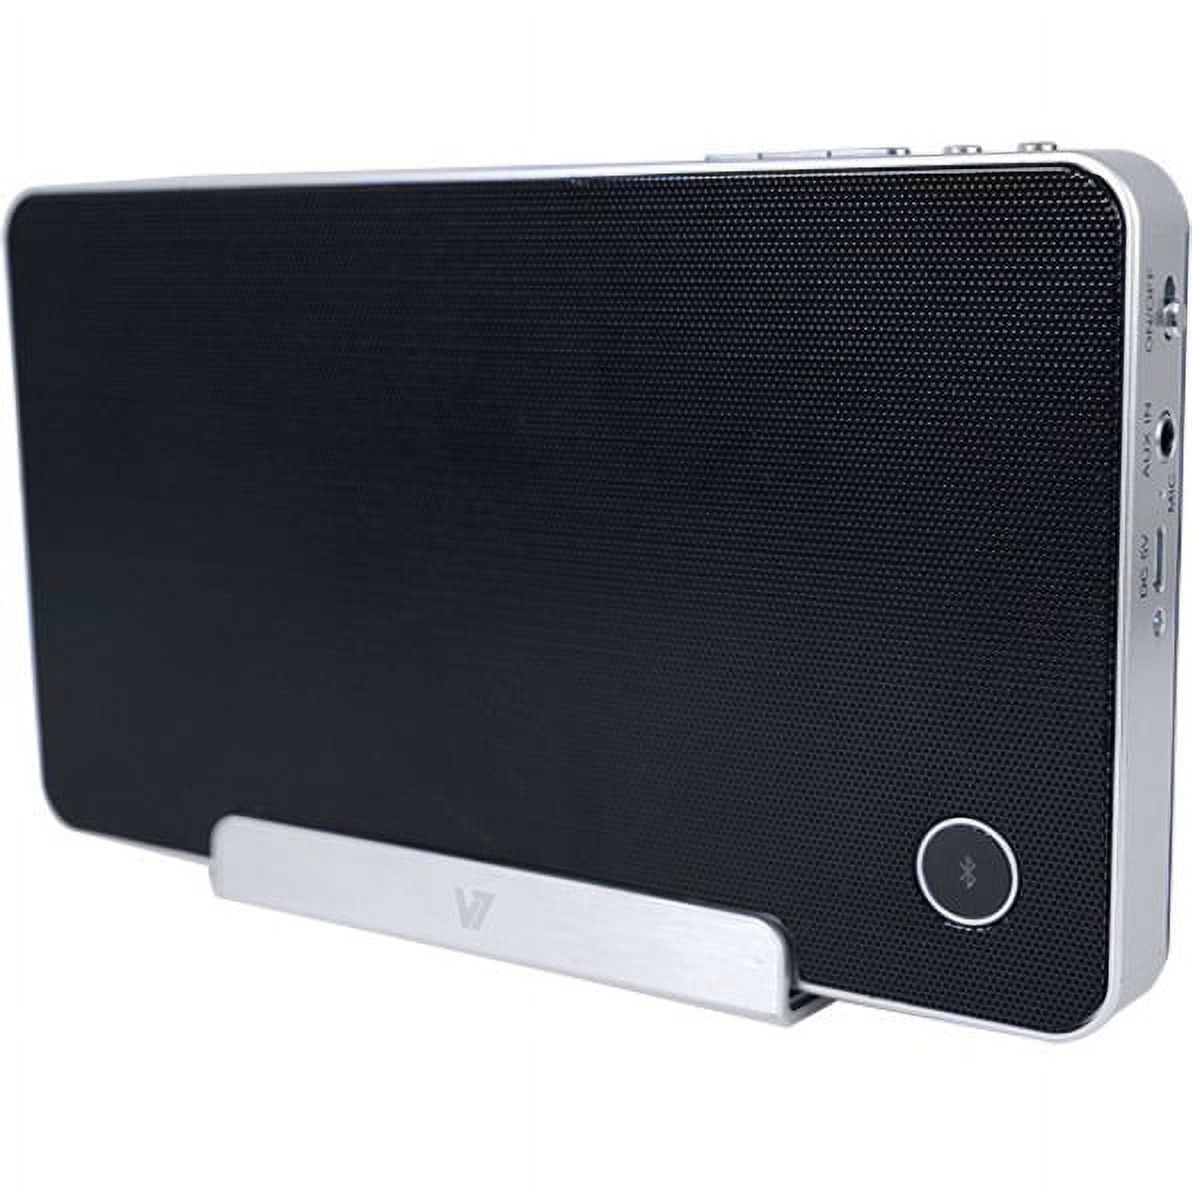 V7 Portable Bluetooth Speaker, Black, SP5500 - image 2 of 11